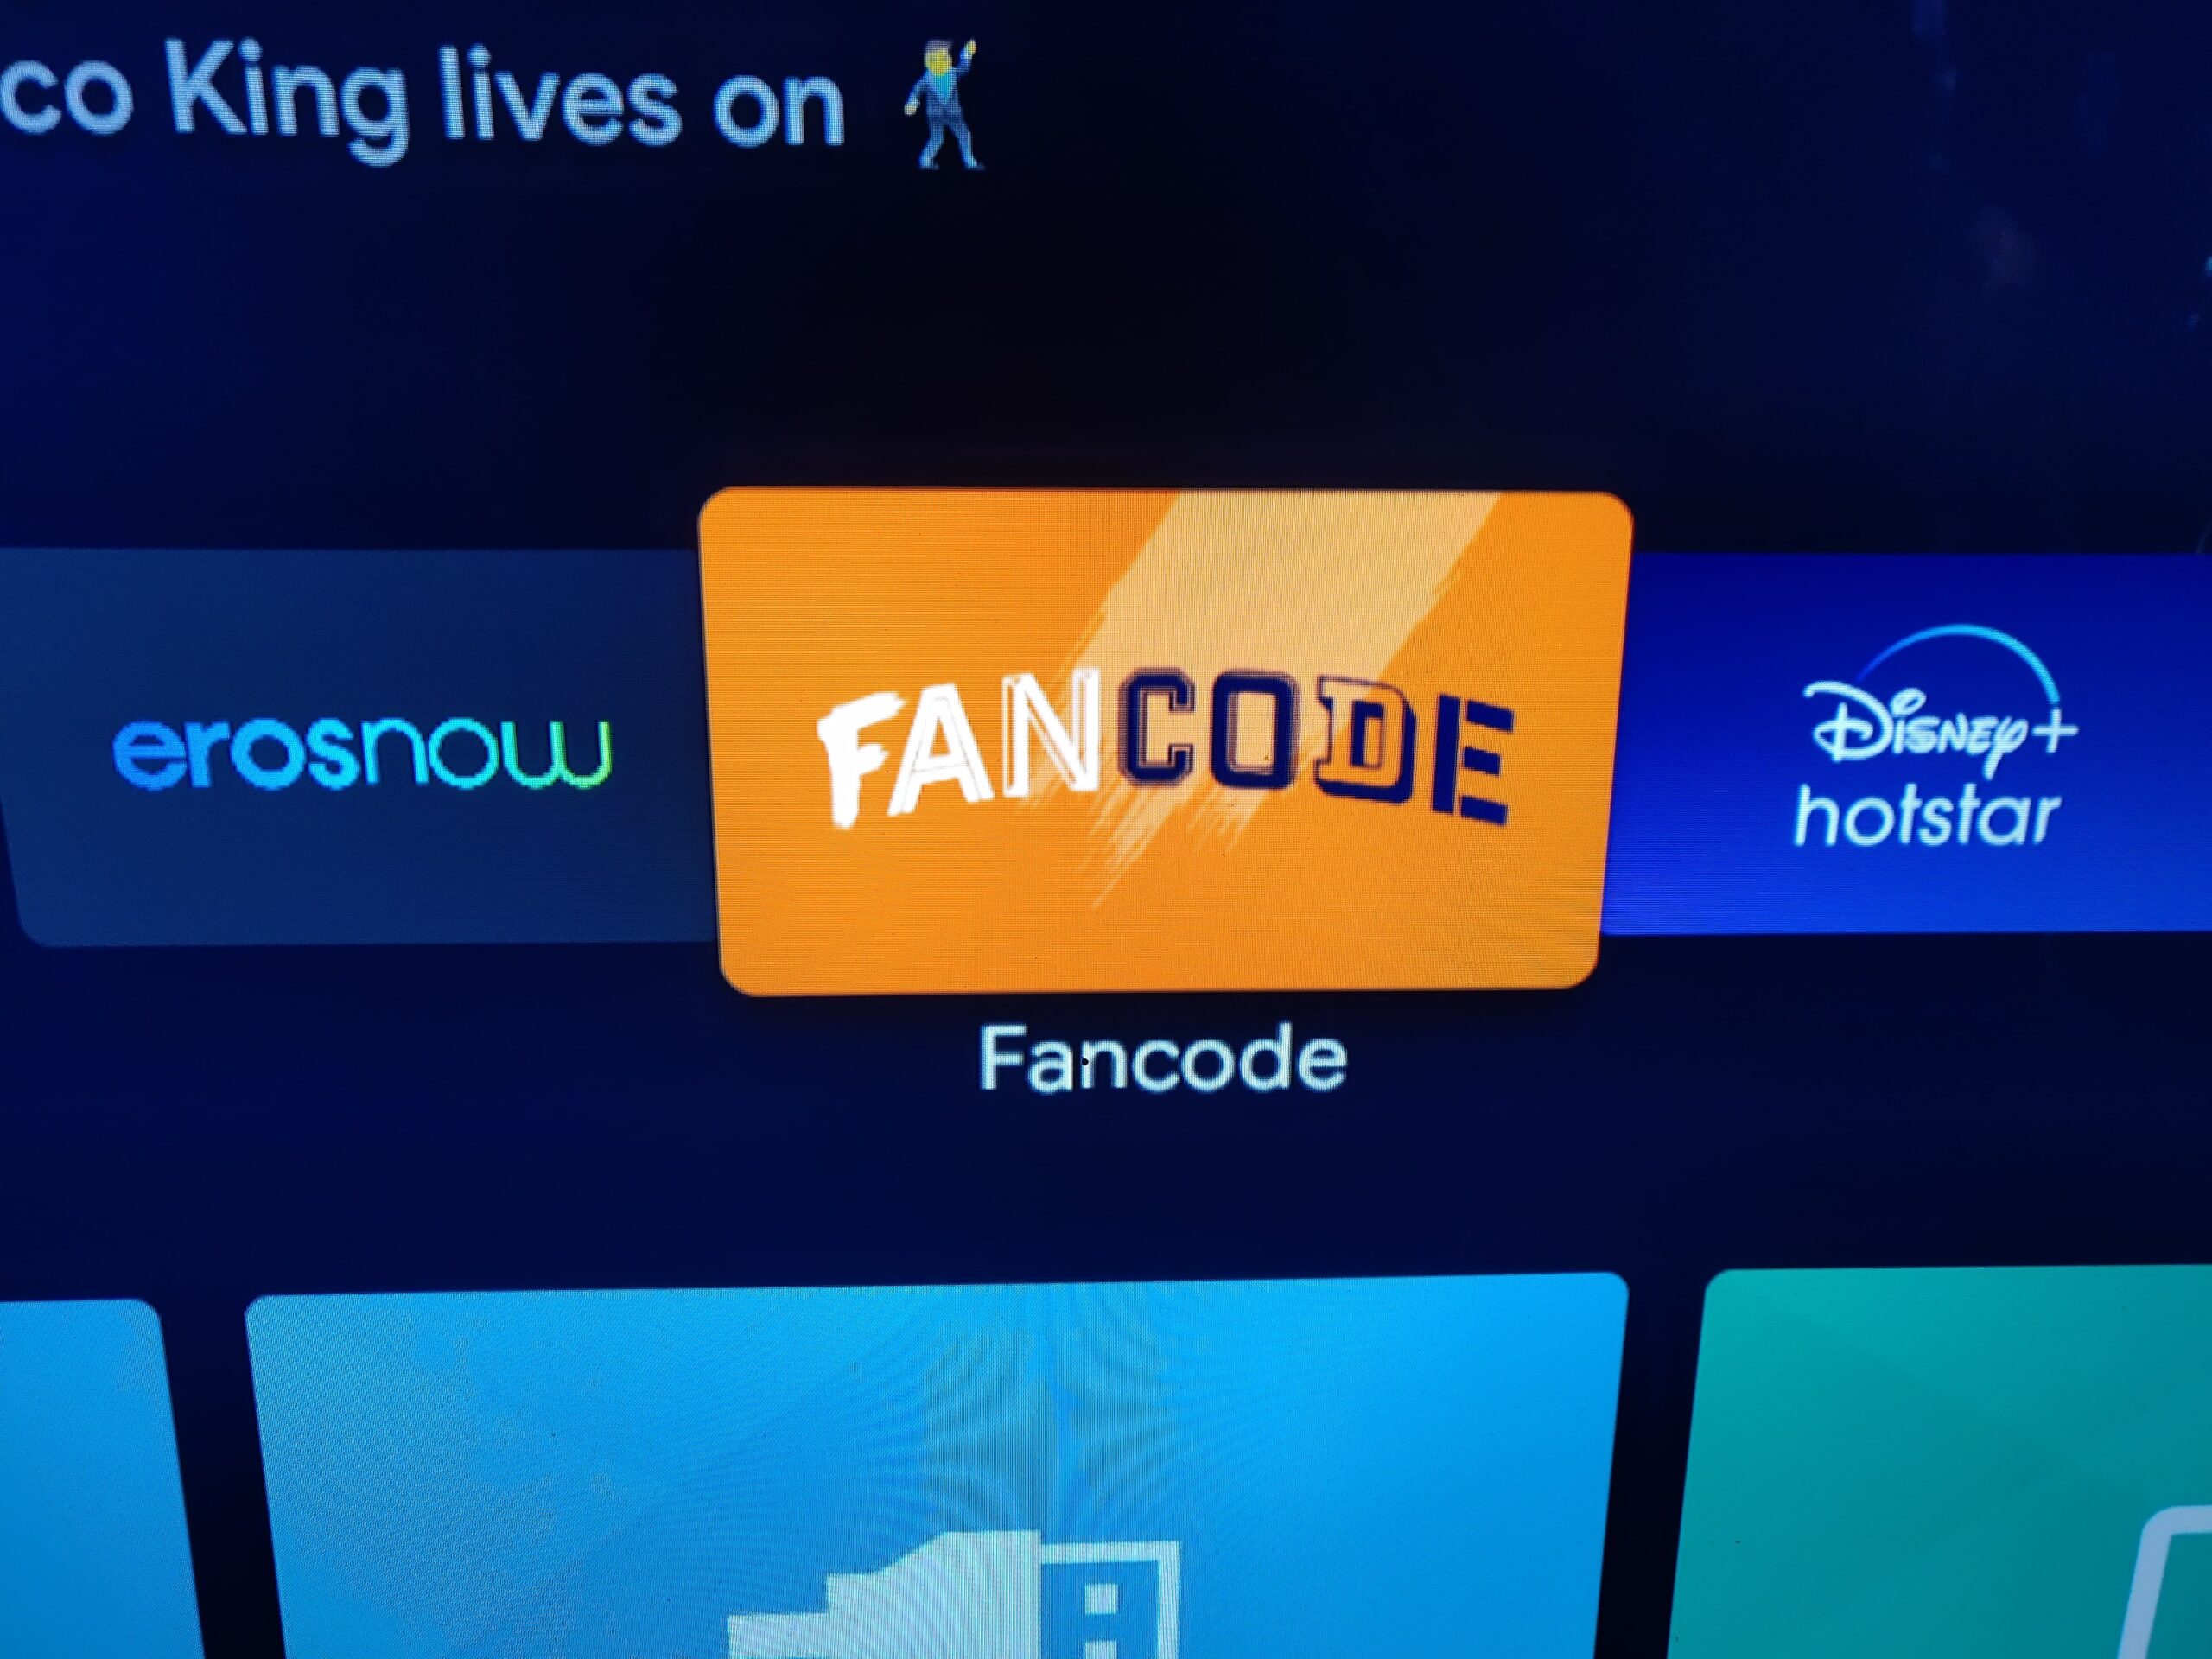 fancode free streaming